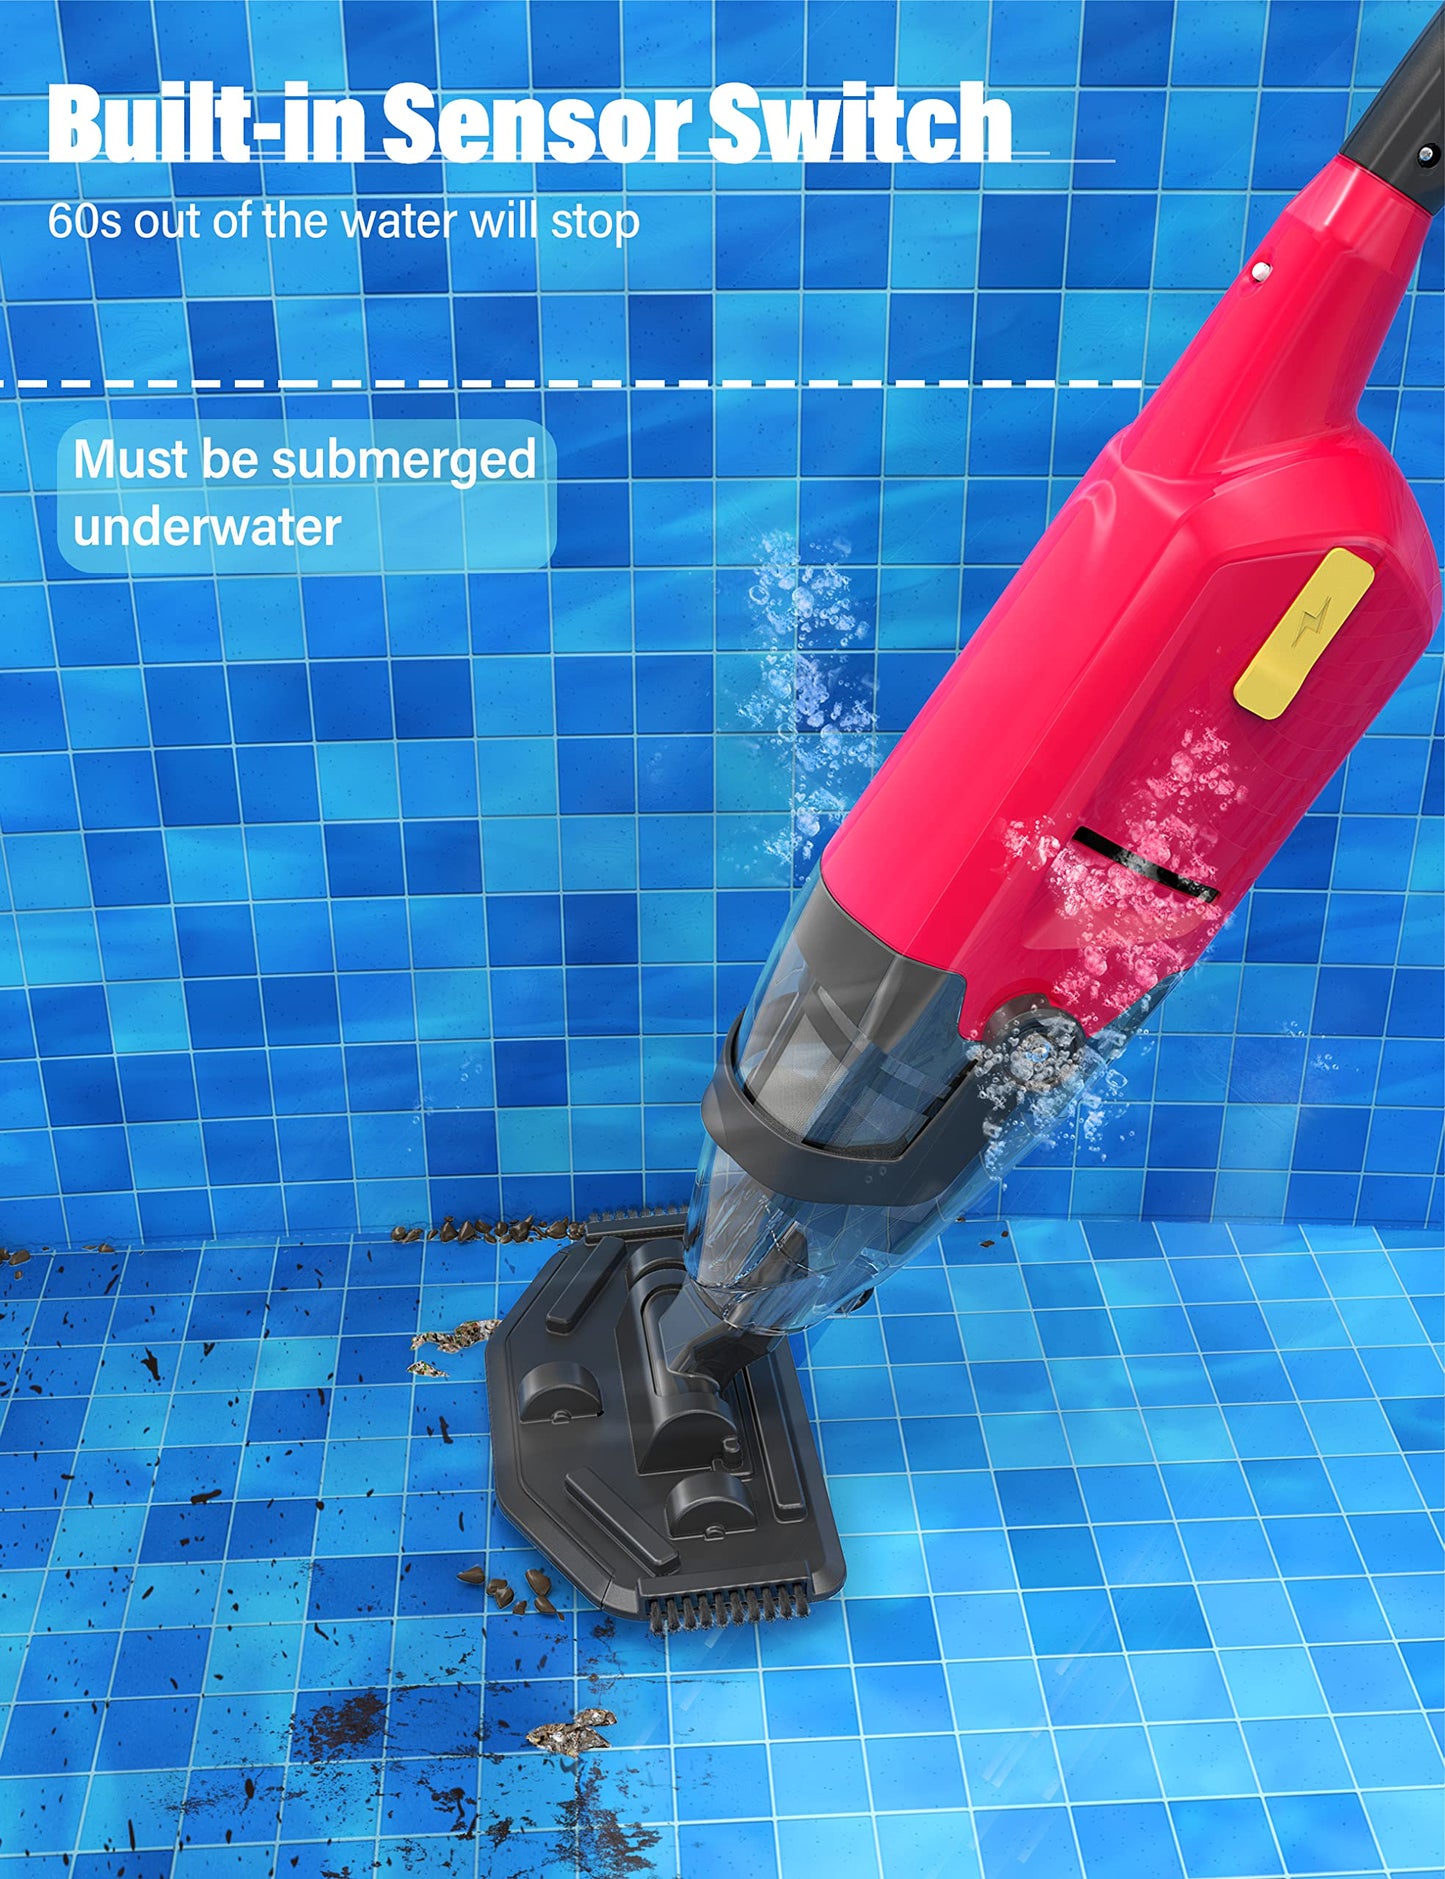 Aspirateur de piscine portatif Efurden, nettoyeur de piscine rechargeable avec durée de fonctionnement jusqu'à 60 minutes, idéal pour les piscines hors sol, les spas et les bains à remous pour le sable et les débris, rouge carmin rose